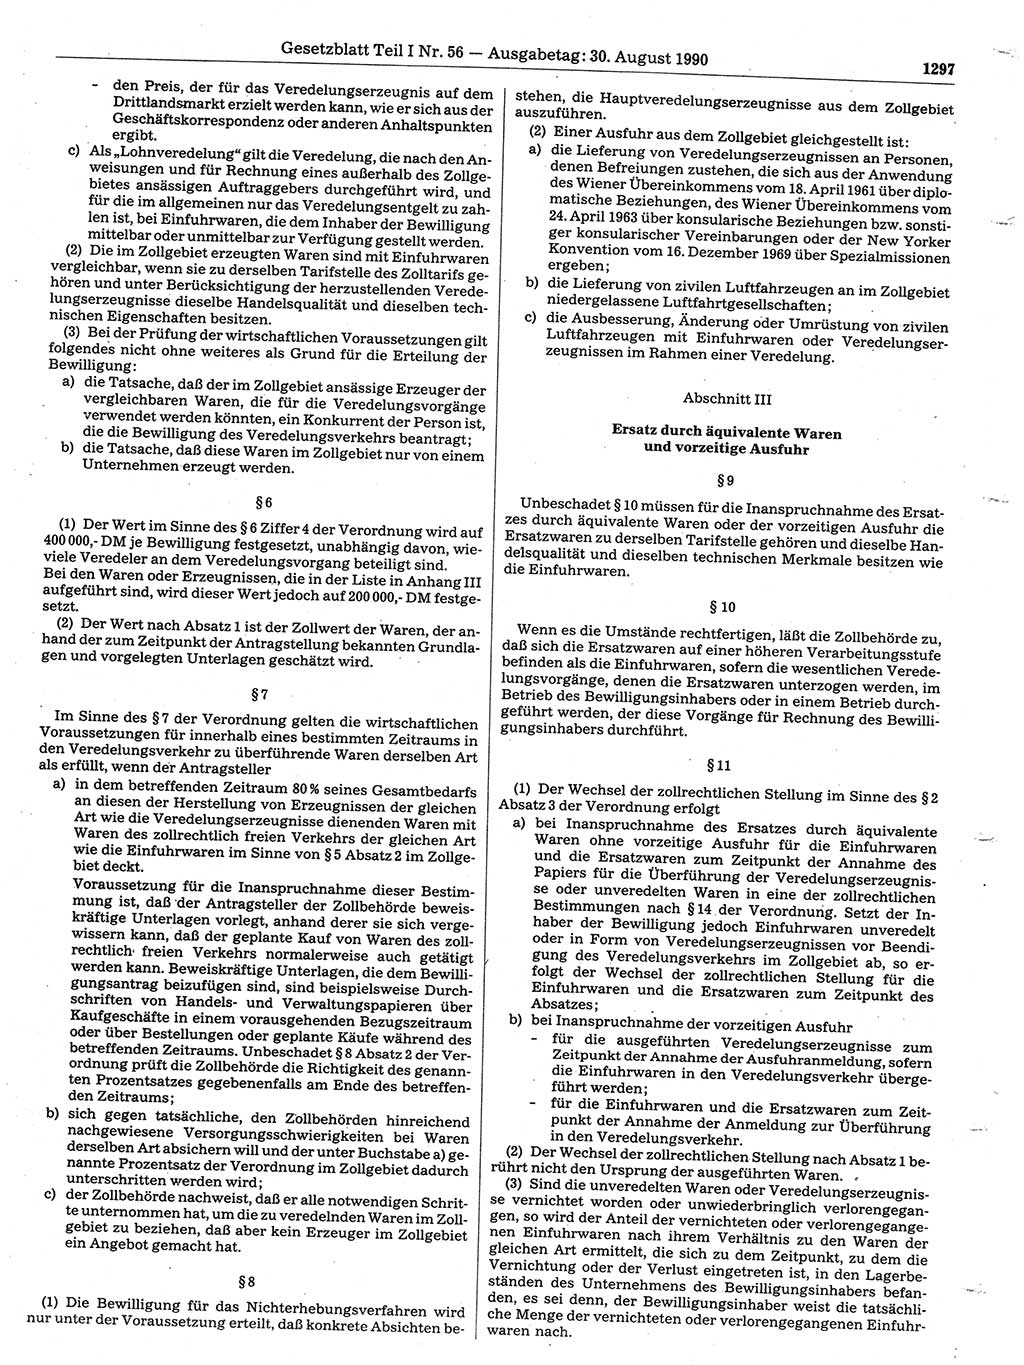 Gesetzblatt (GBl.) der Deutschen Demokratischen Republik (DDR) Teil Ⅰ 1990, Seite 1297 (GBl. DDR Ⅰ 1990, S. 1297)